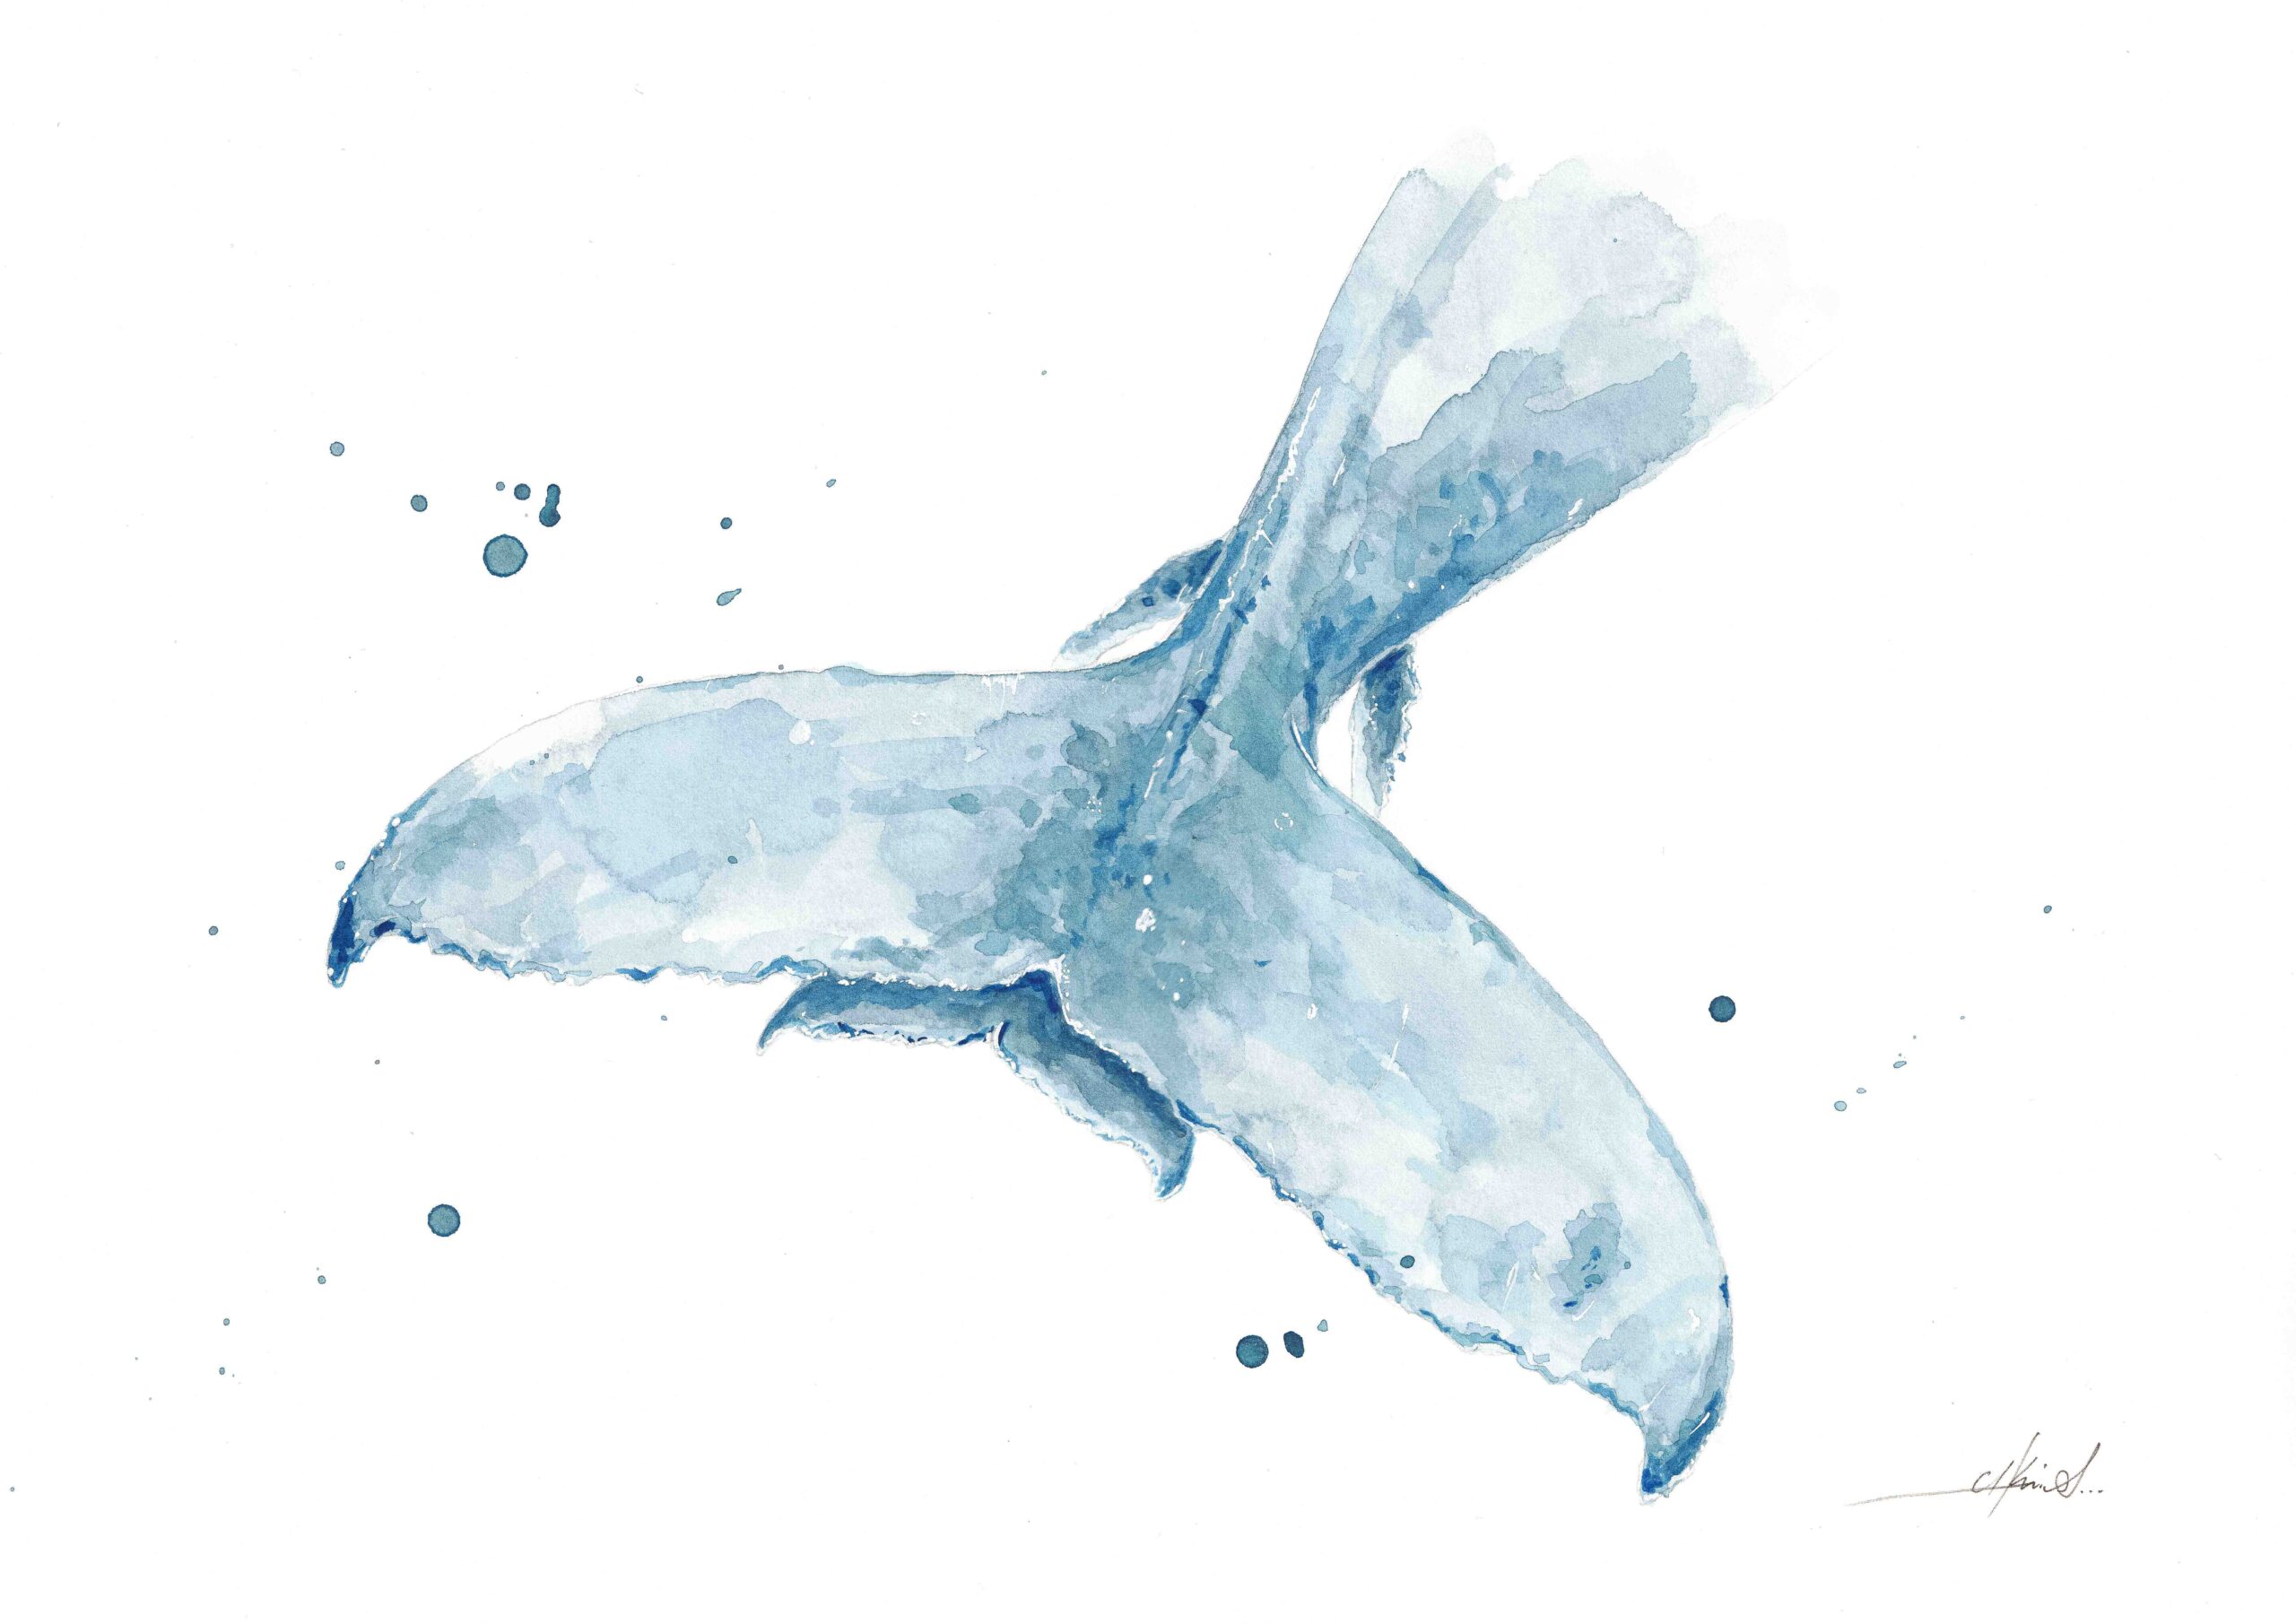 Acuarela de la cola o aleta caudal de una ballena jorobada o yubarta con su cría debajo. La pintura se destaca por tonos azul claro y un fondo blanco, con salpicaduras de pintura que añaden un toque dinámico y vibrante.